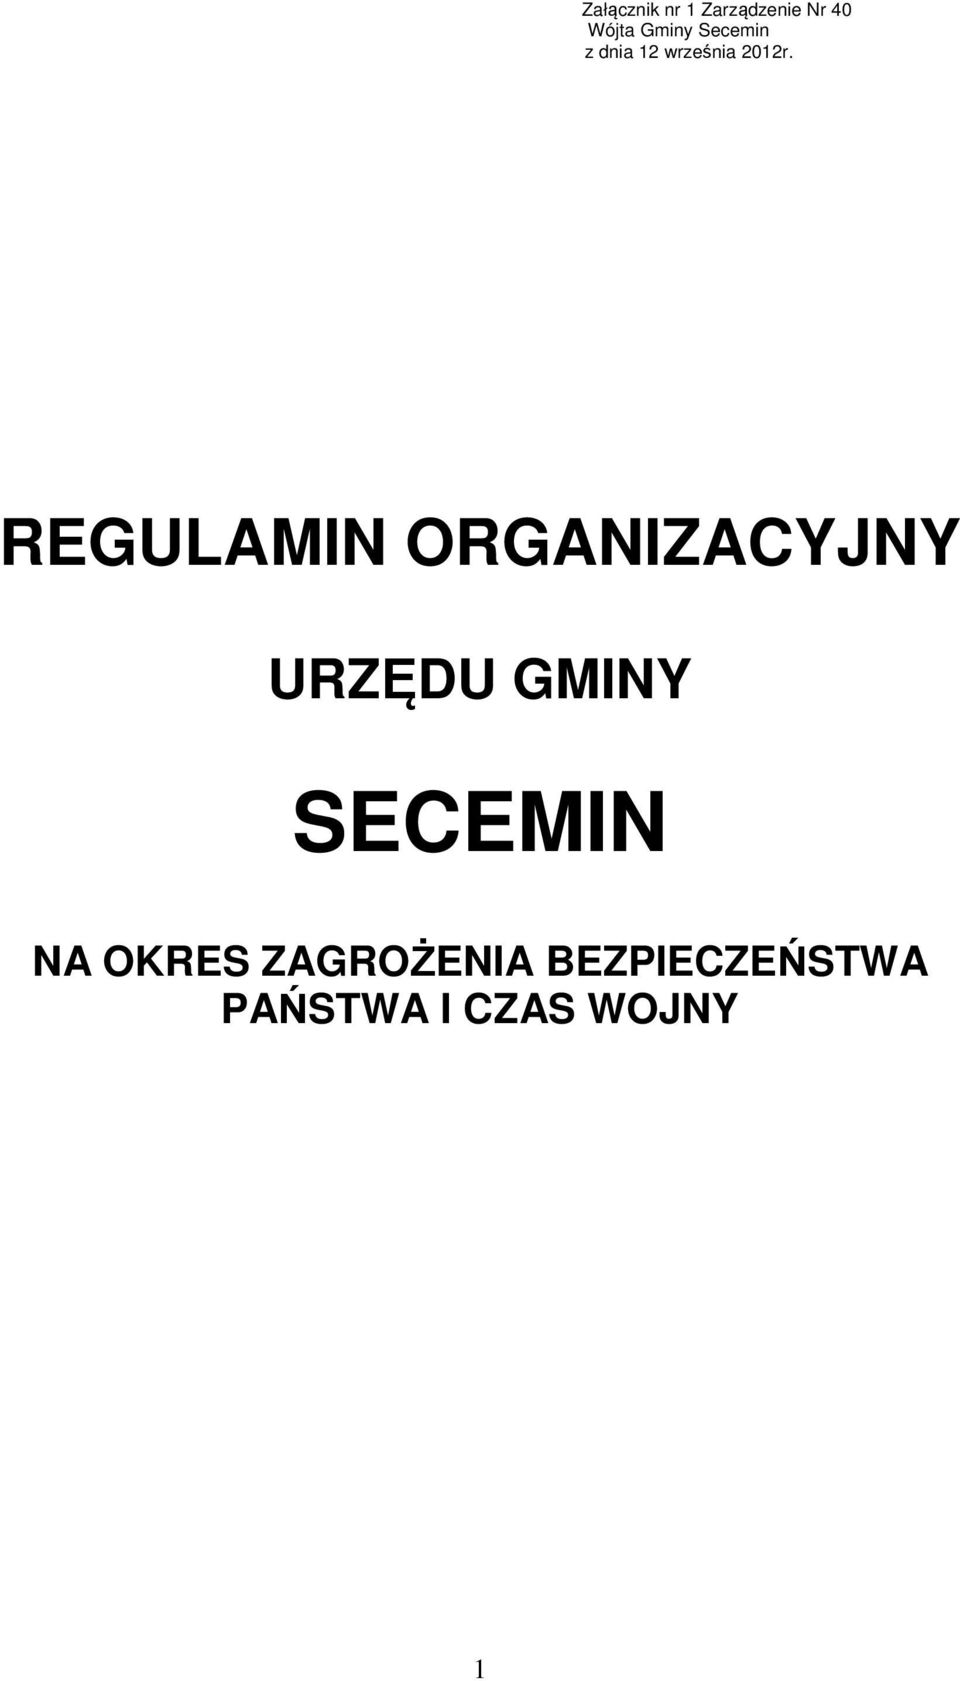 REGULAMIN ORGANIZACYJNY URZĘDU GMINY SECEMIN